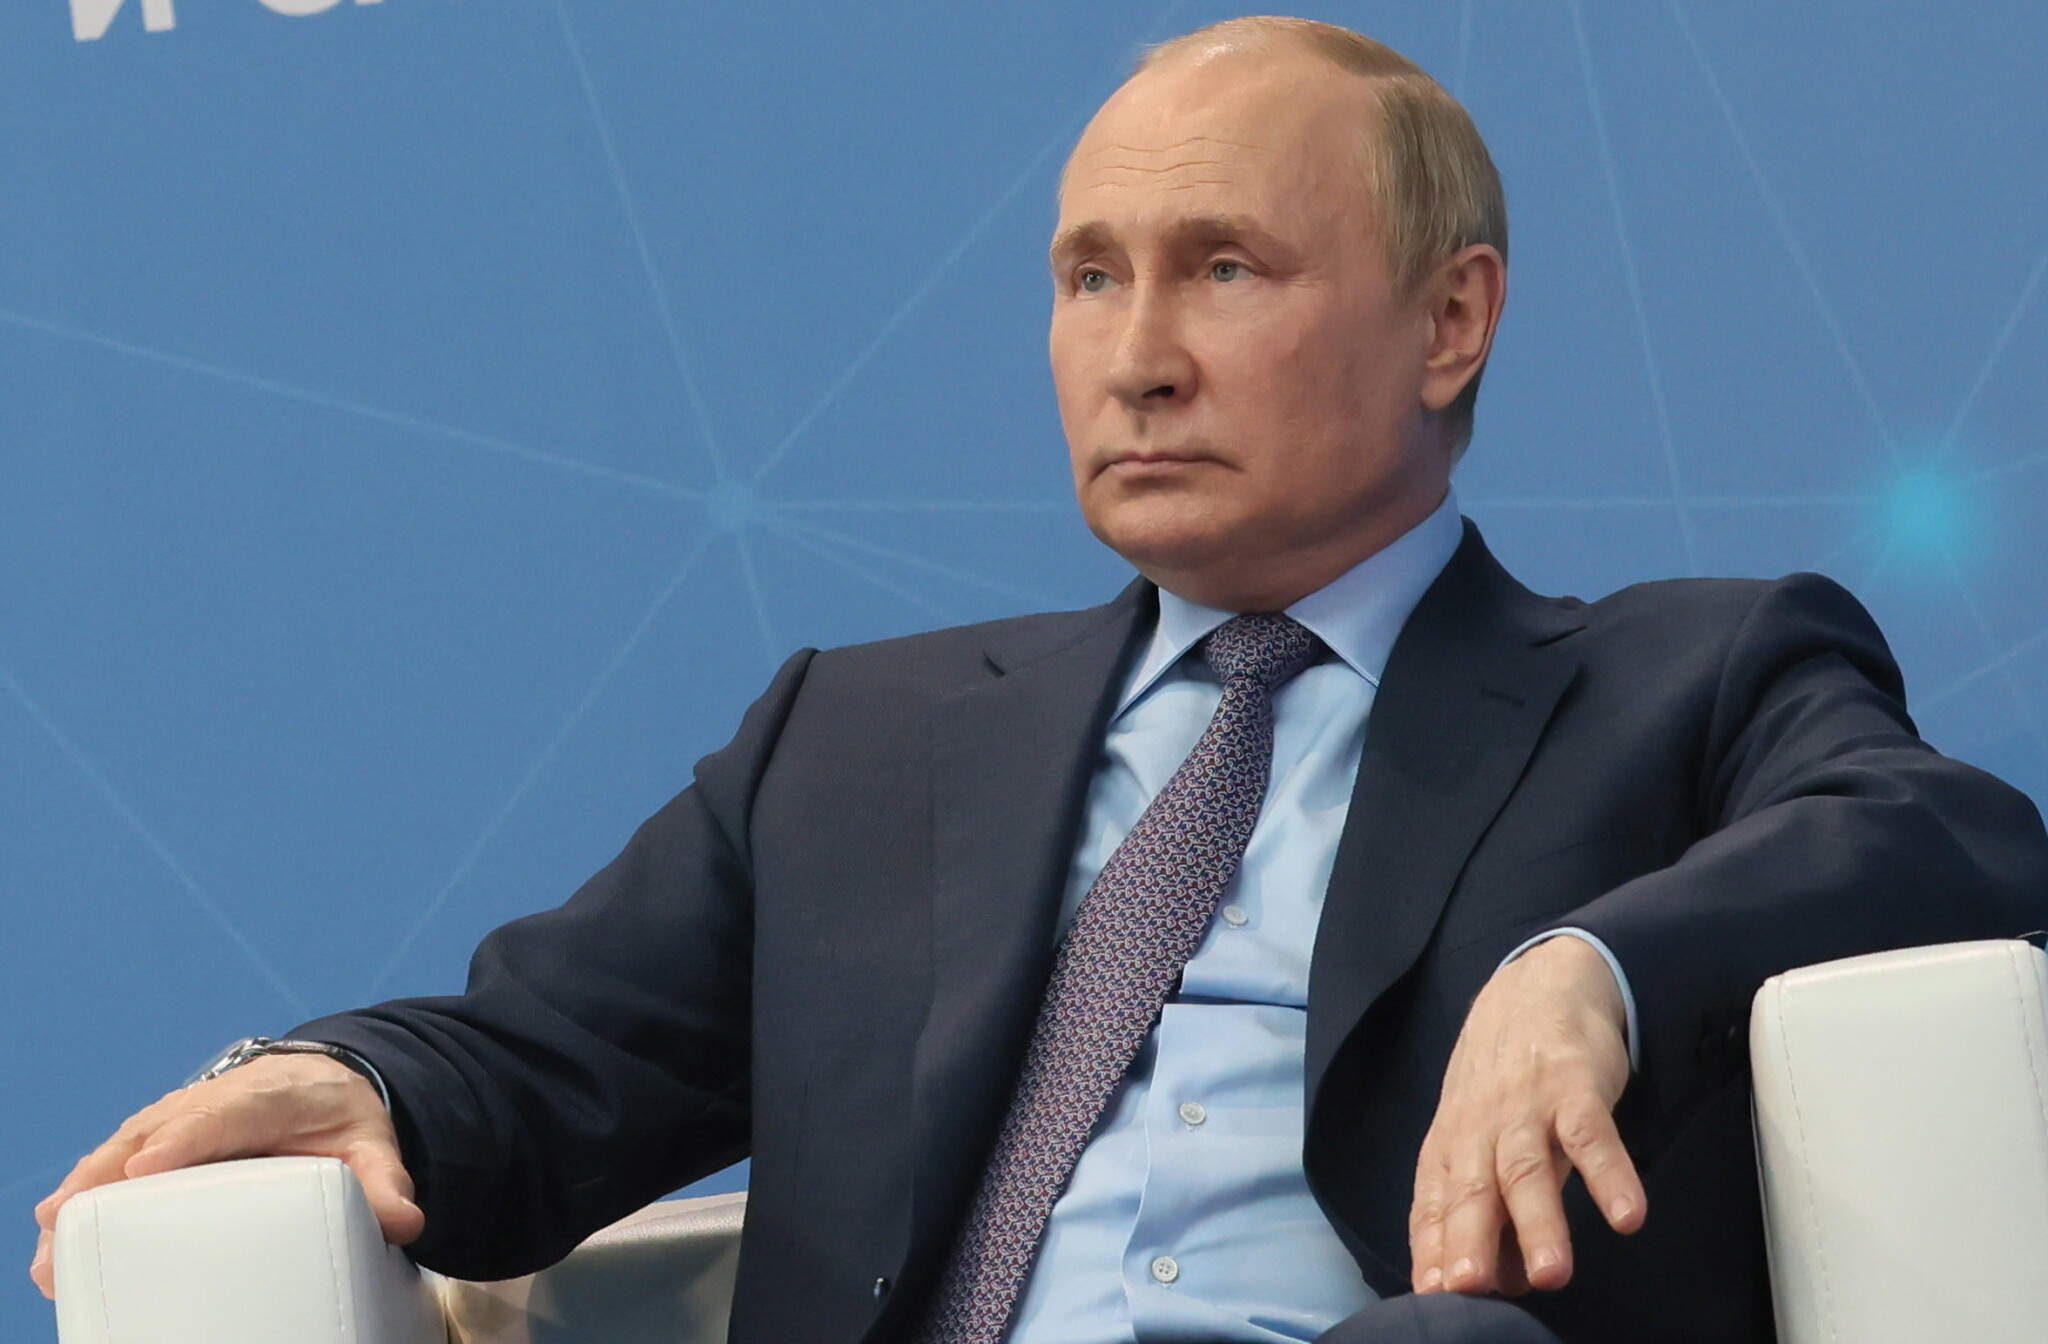 Putyin a világ éheztetésére és menekülthullám elindítására játszhat